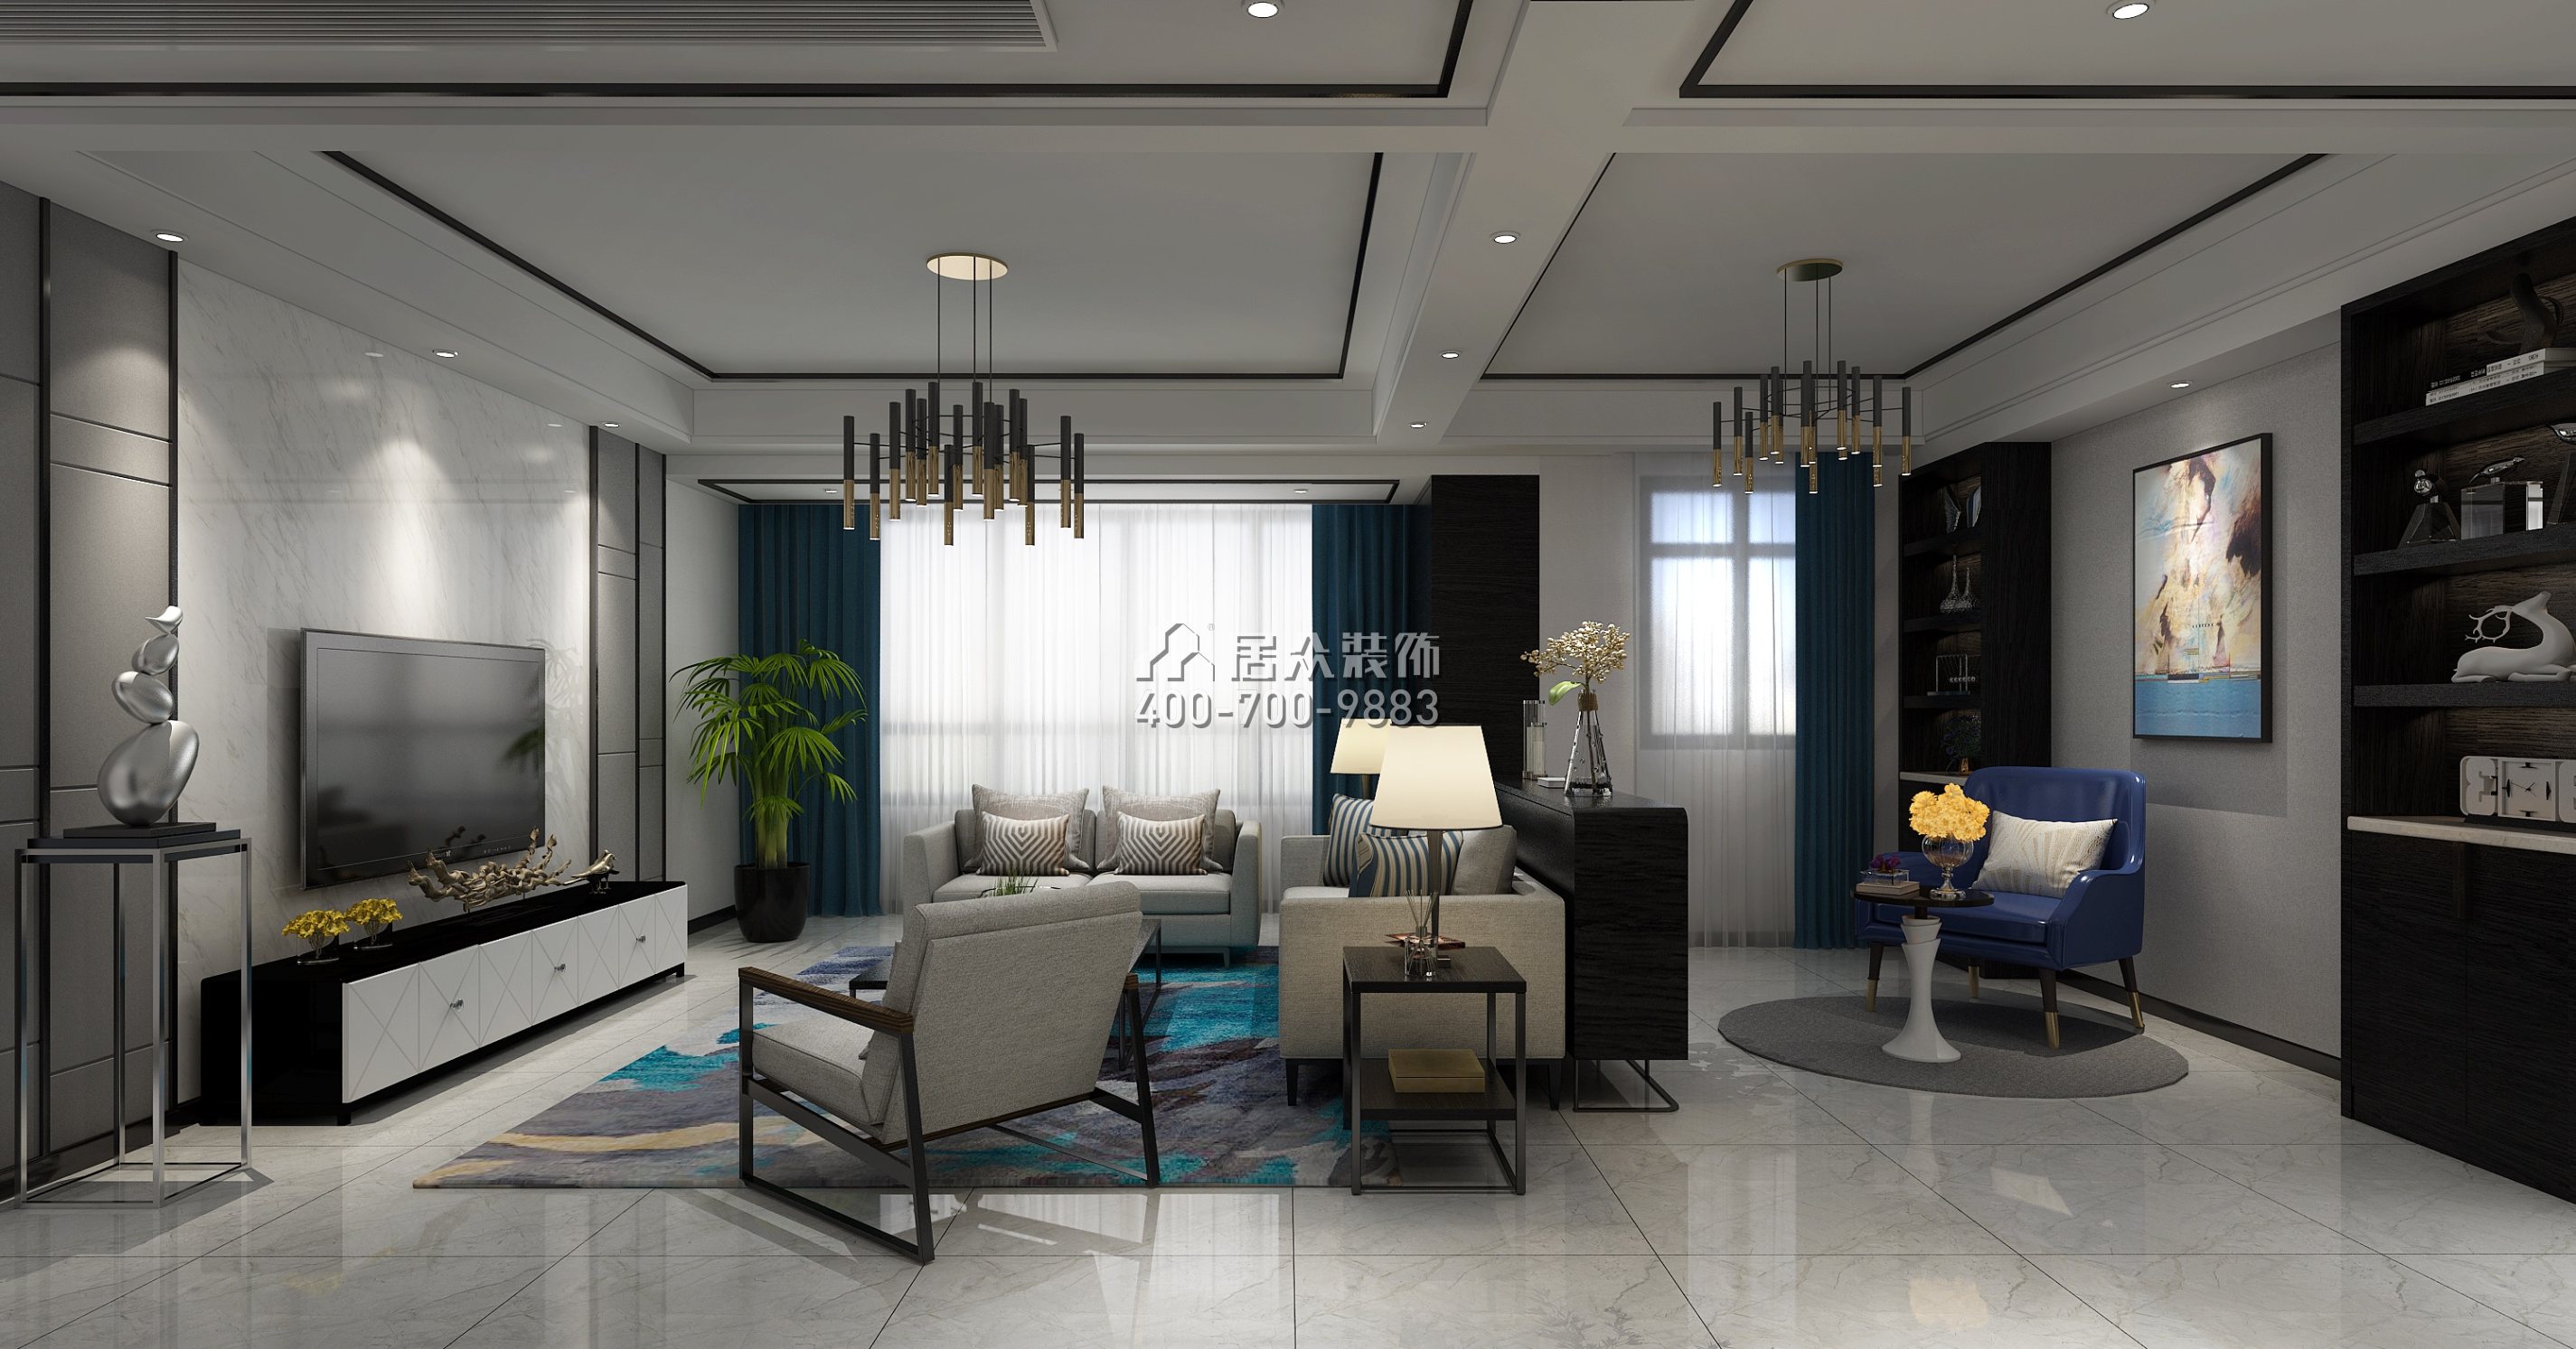 紫御华庭130平方米现代简约风格平层户型客厅装修效果图